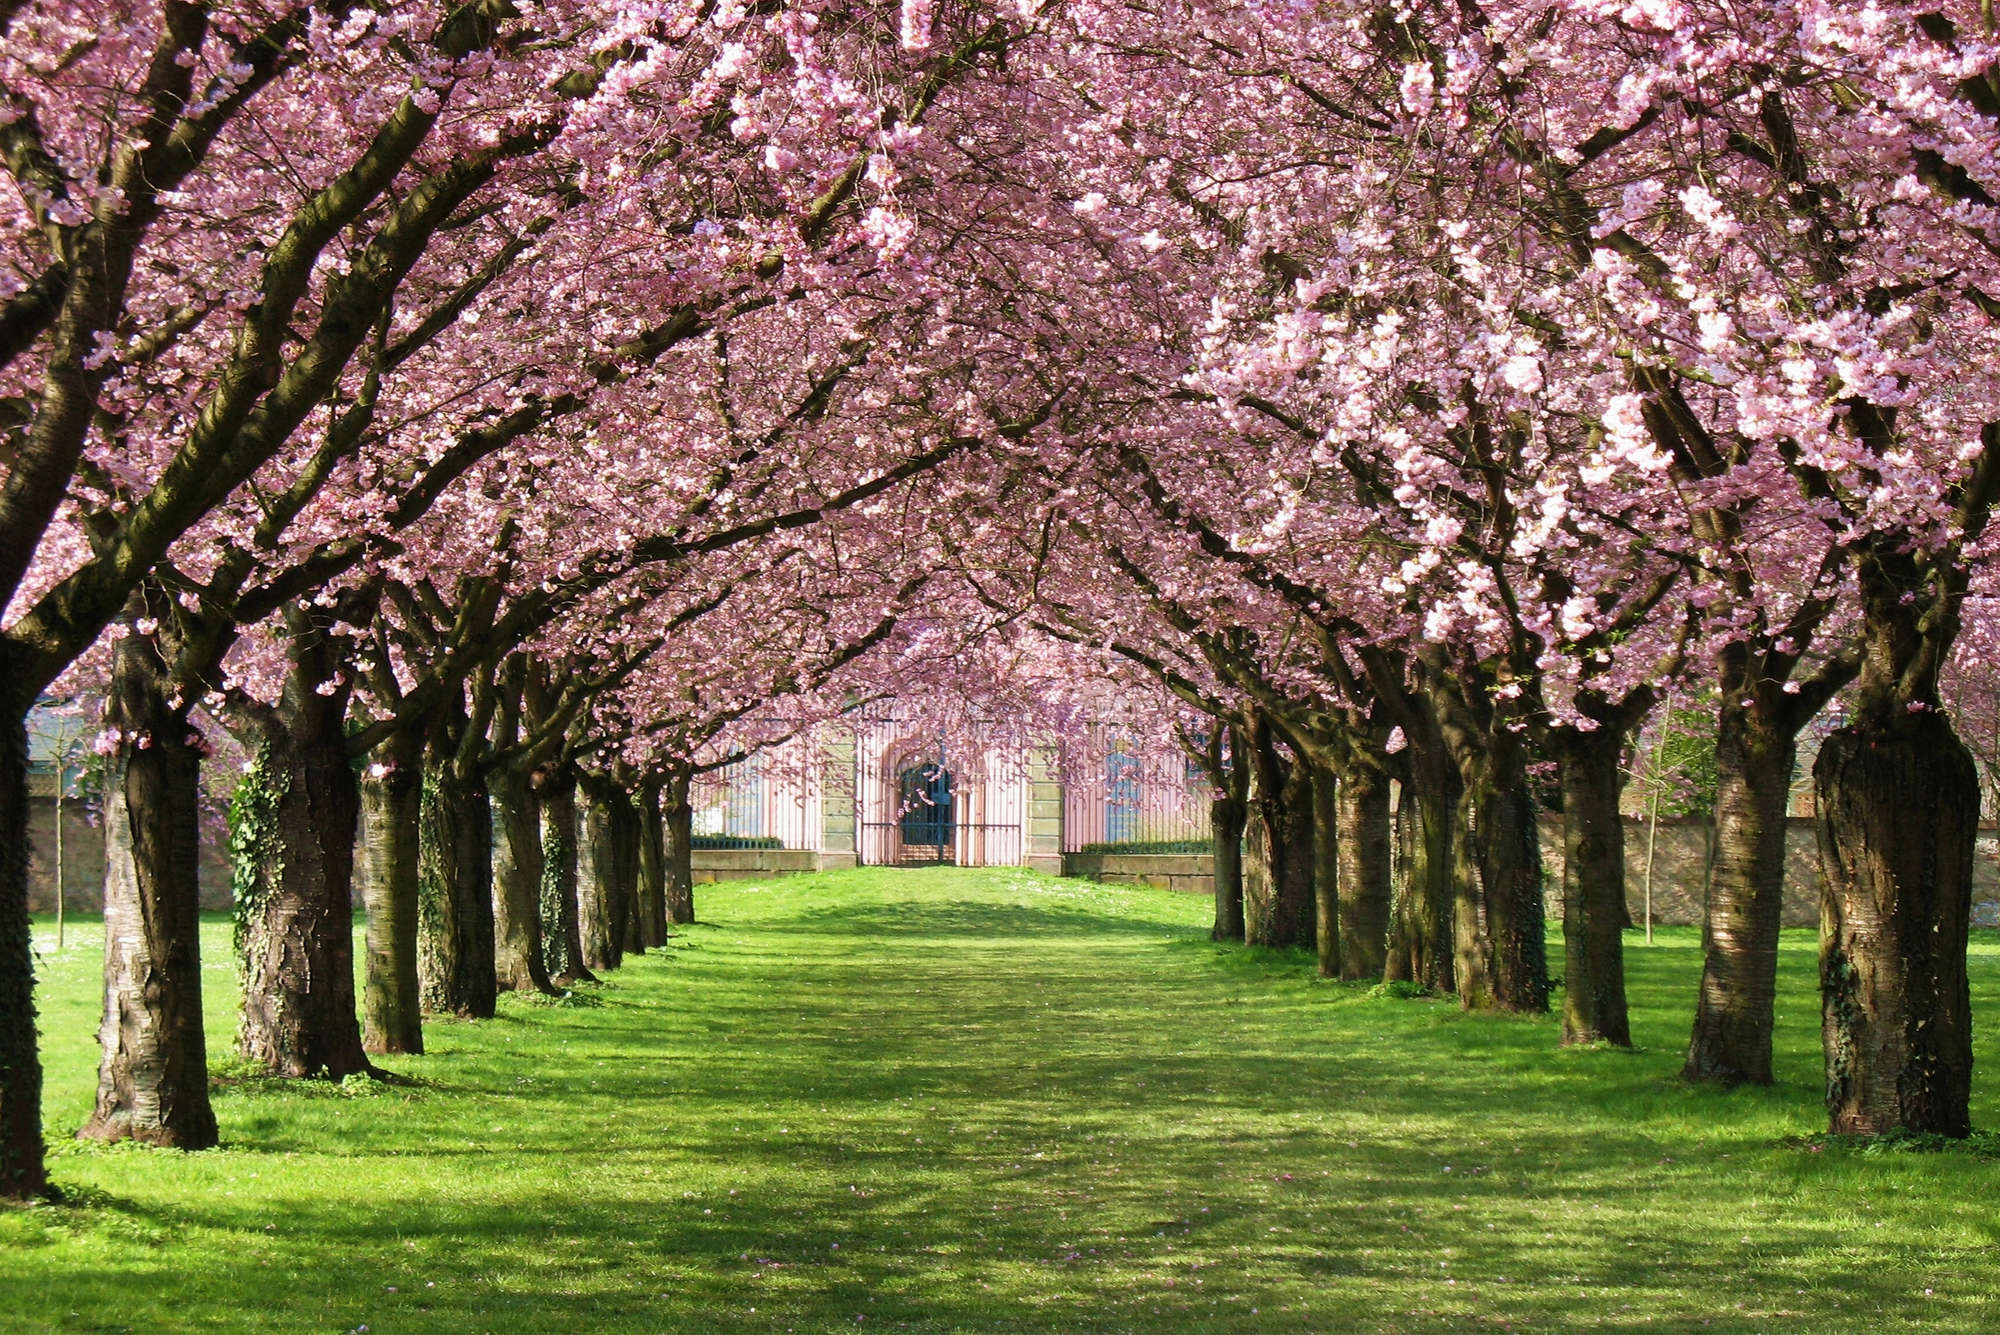             Fototapete Allee mit Bäumen und Blüten – Premium Glattvlies
        